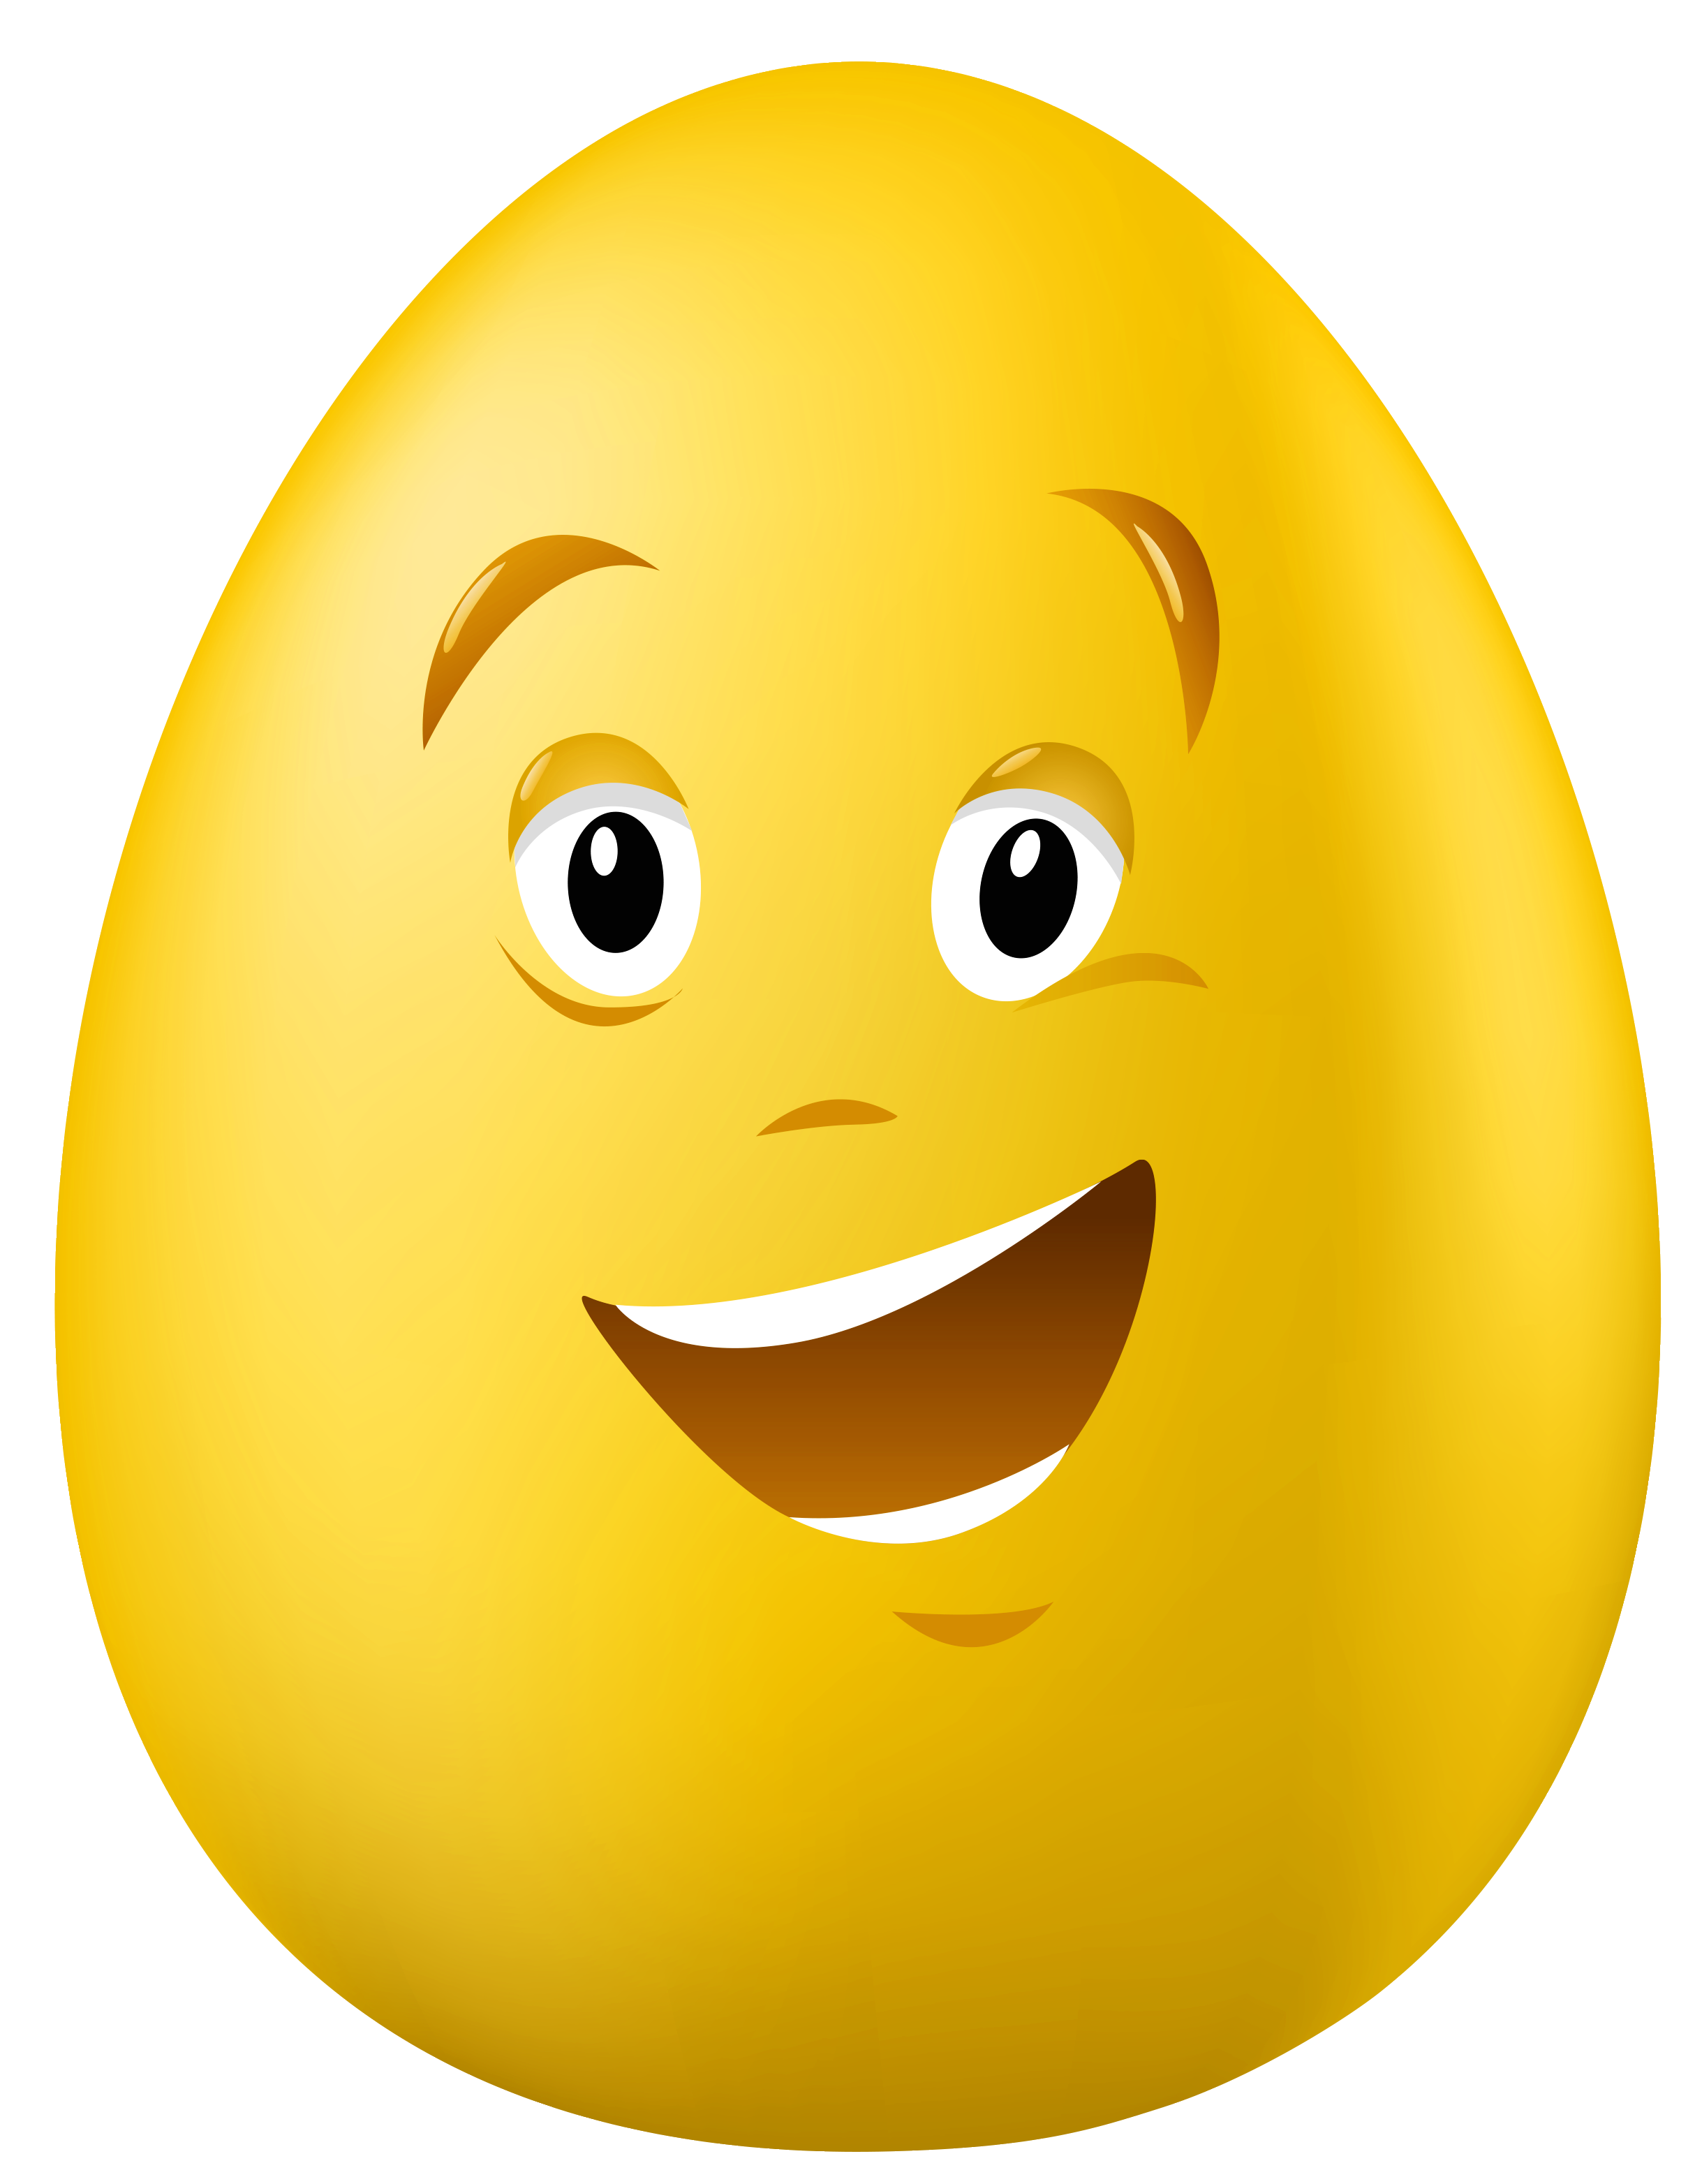 웃는 얼굴의 계란